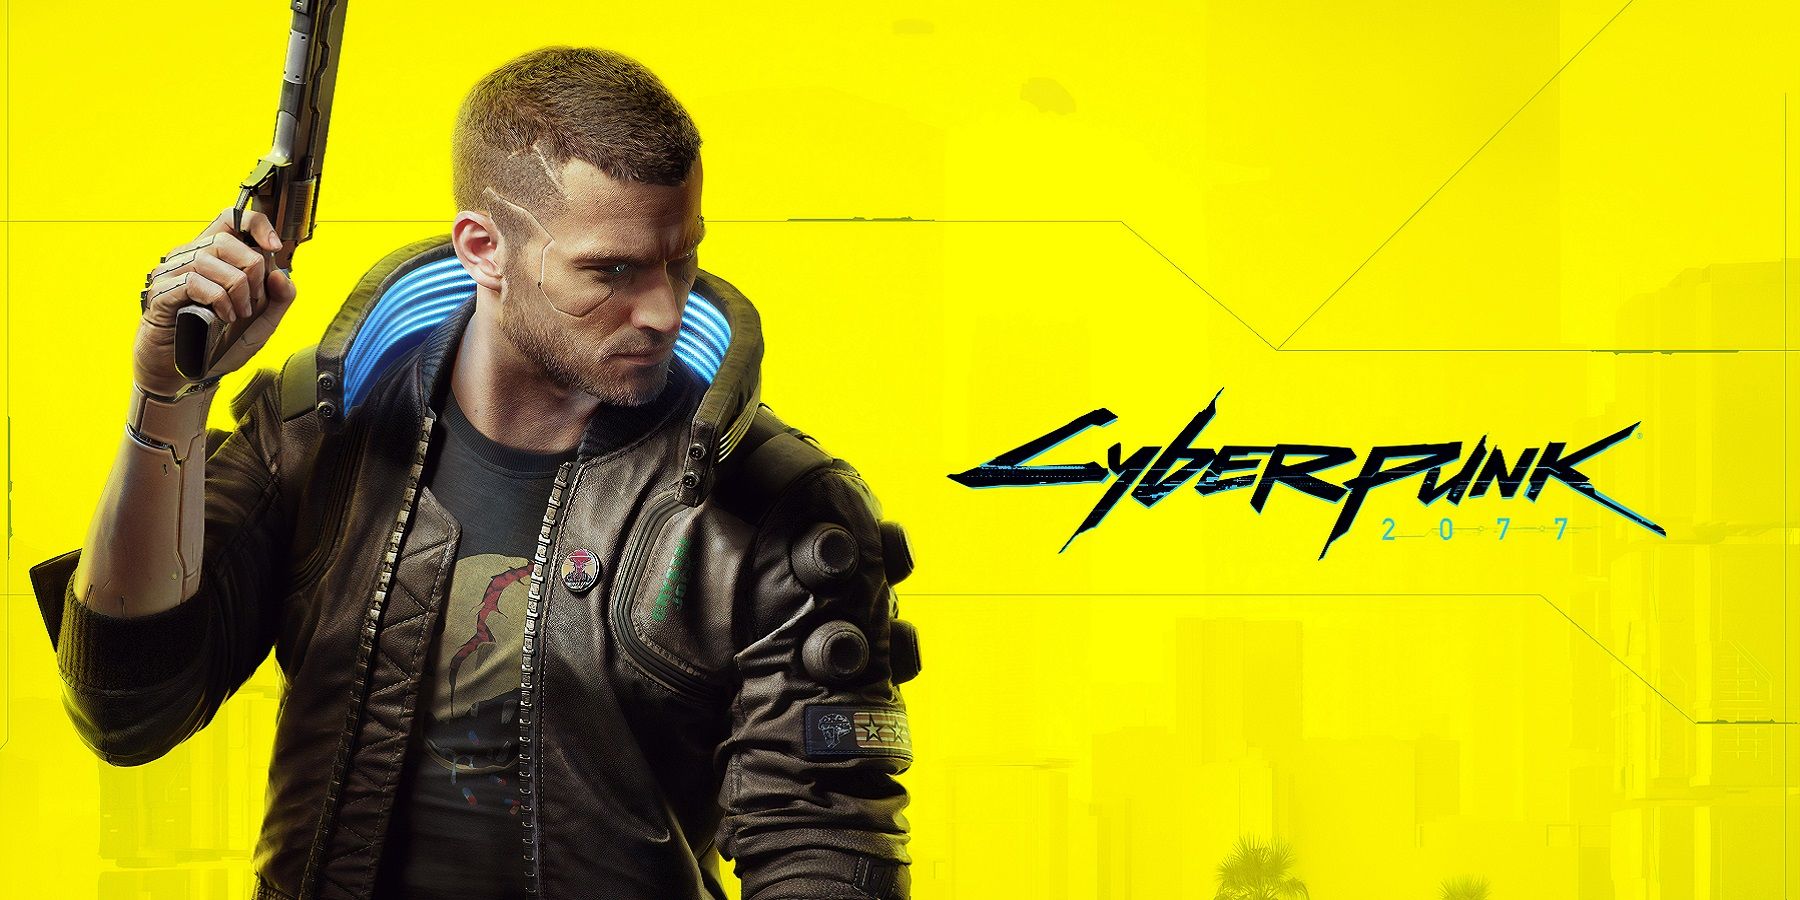 Le logo Cyberpunk 2077 à côté du protagoniste V, le tout sur un fond jaune vif.